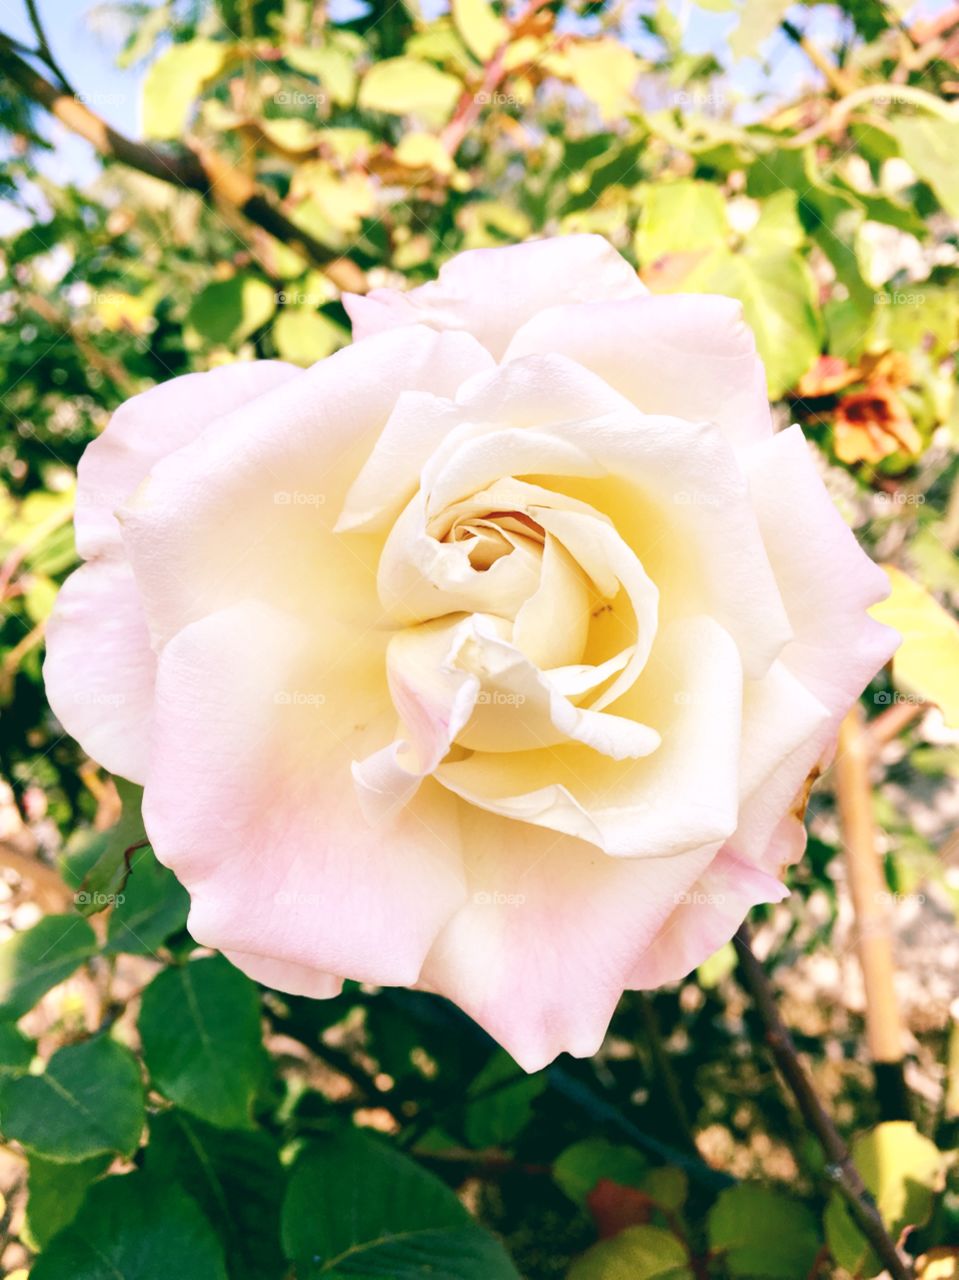 🌺 Fim de #cooper!
Suado, cansado e feliz, alongando e curtindo a beleza das #rosas do jardim.
Que tal essa #flor? O clique dessa #roseira foi de ontem.
🏁
#treino #flor #flowers #pétalas #pétala #jardim #jardinagem #garden #flora #run #esporte